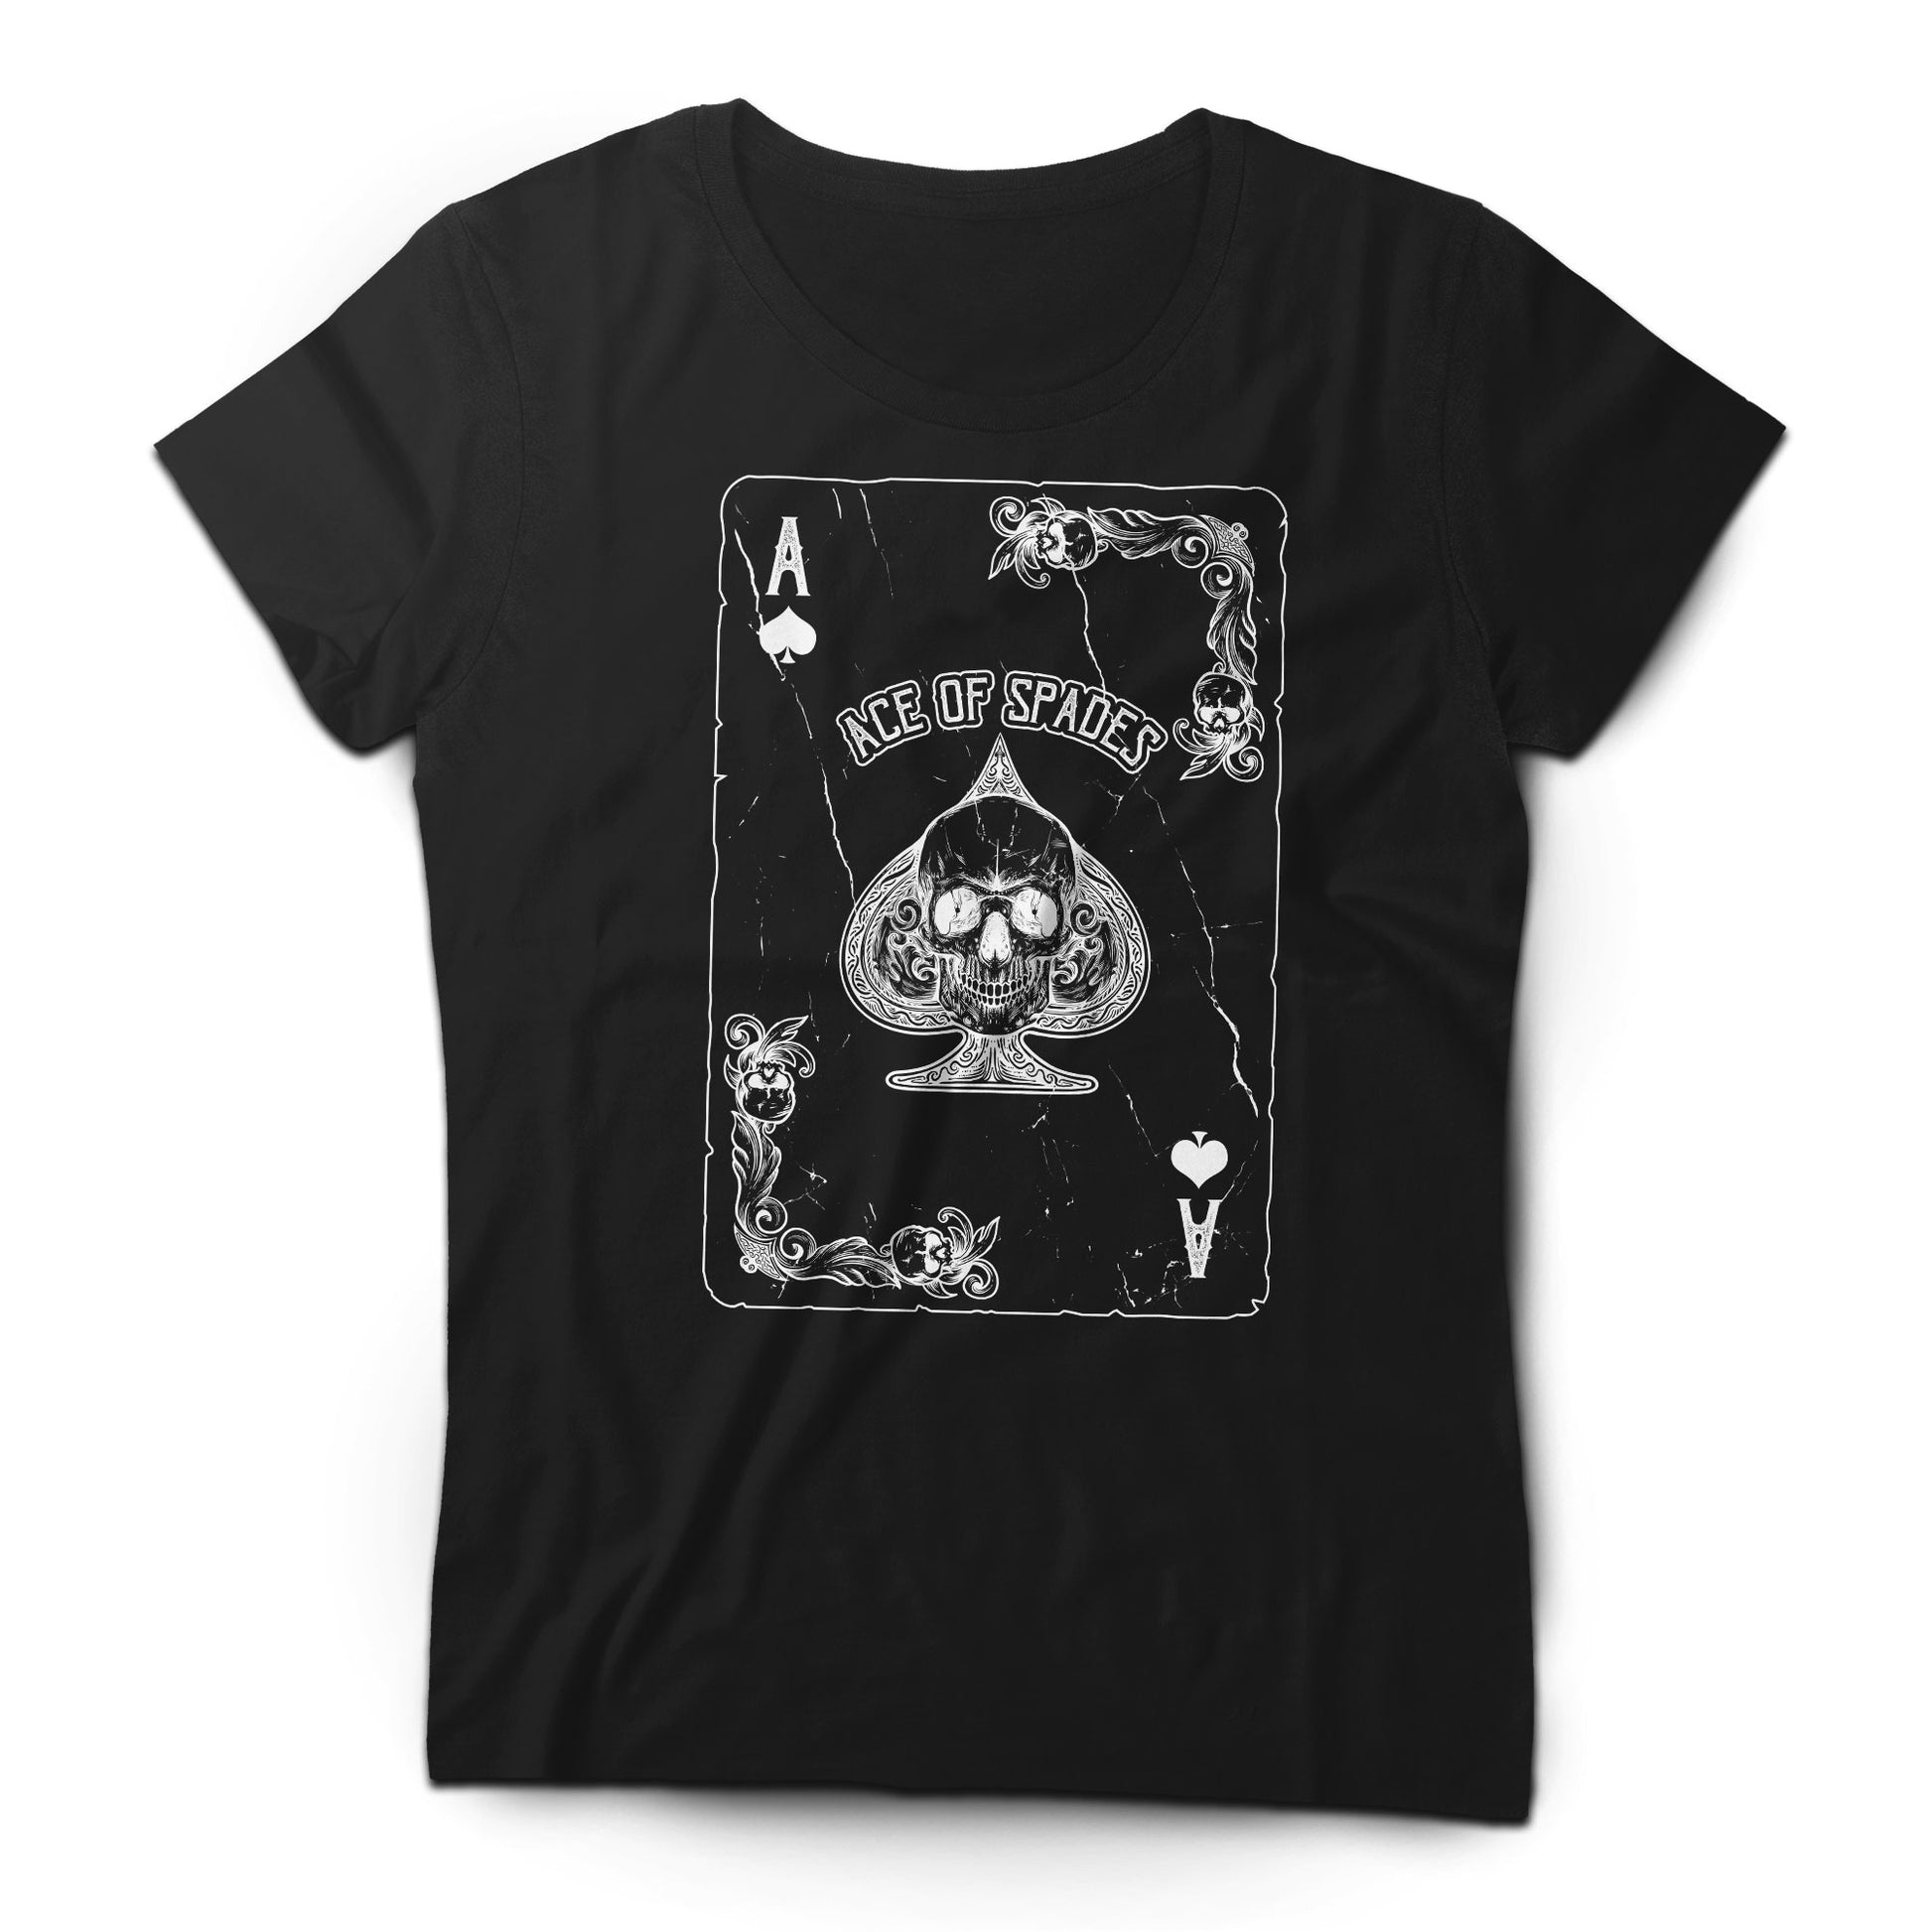 Motörhead - Ace of Spades - Women's T-shirt Black 2